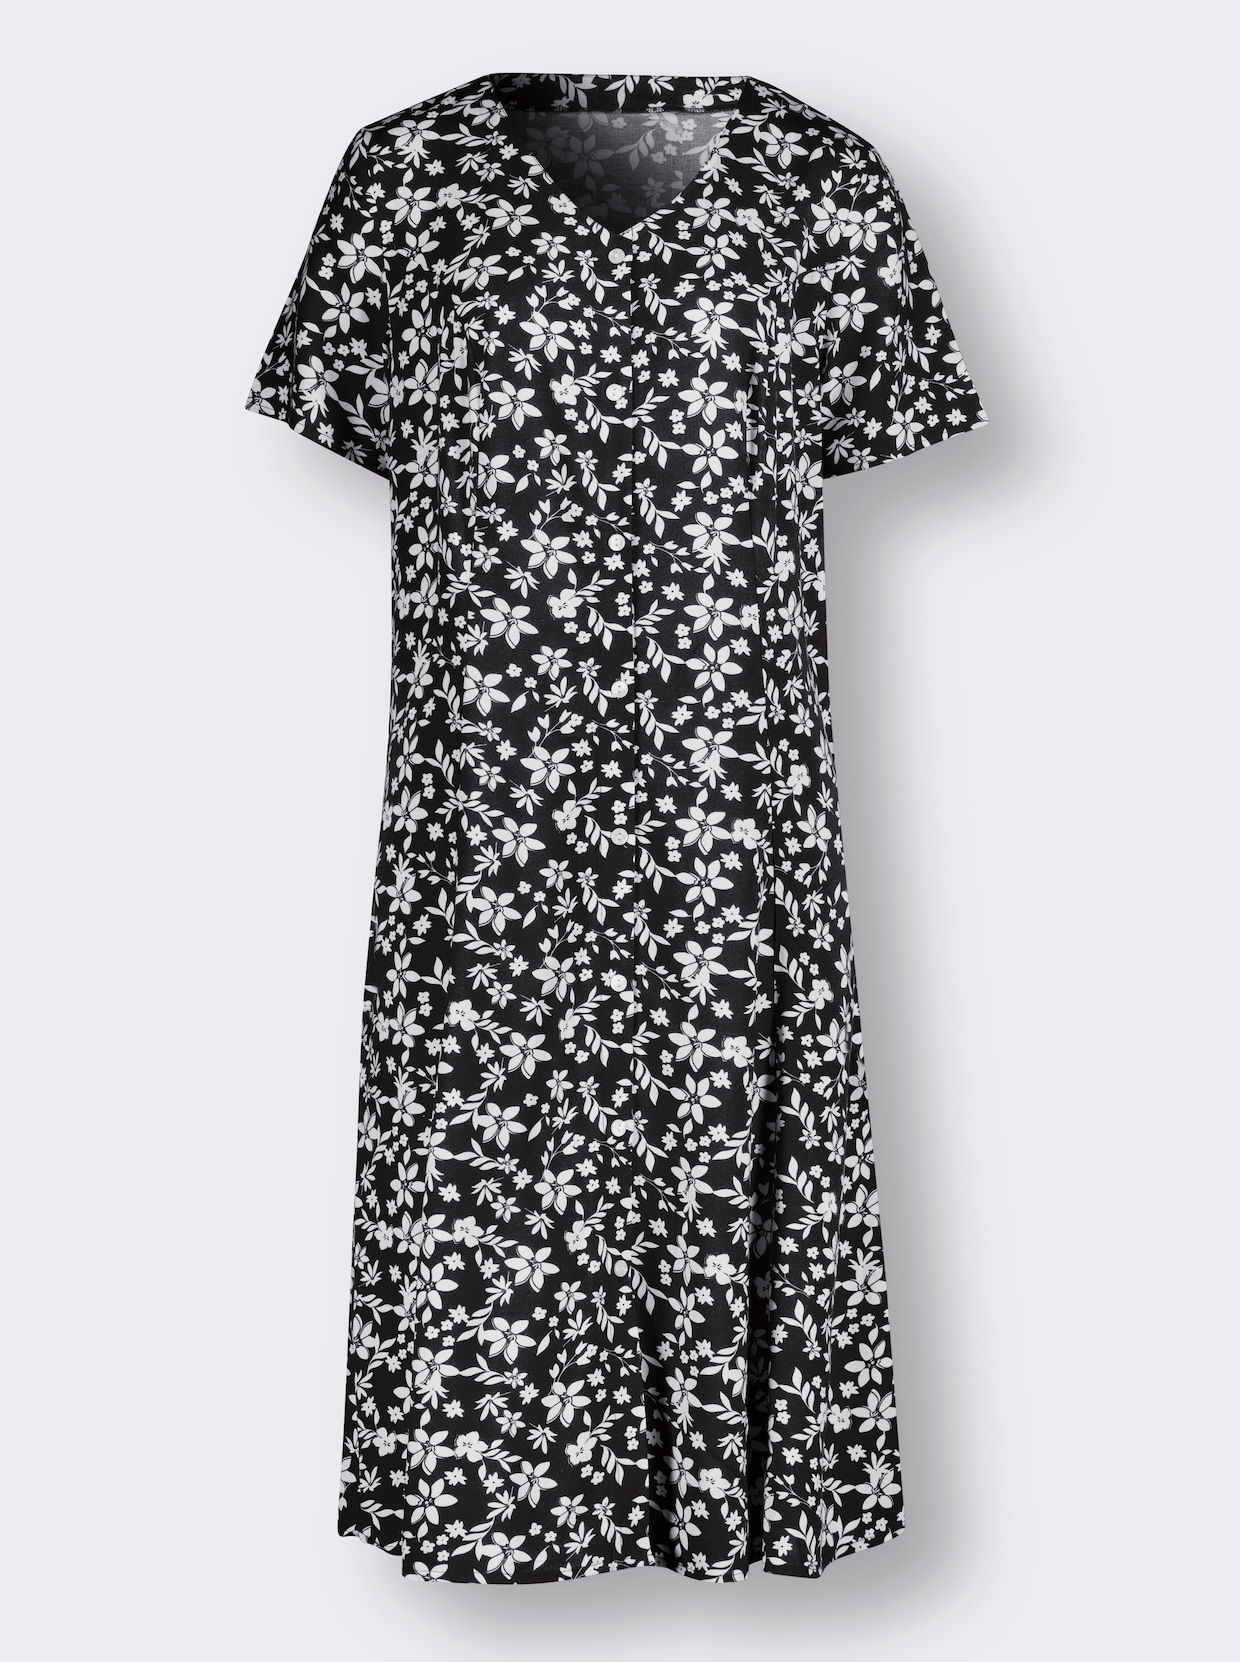 Šaty s květinovým vzorem - černá-vzor